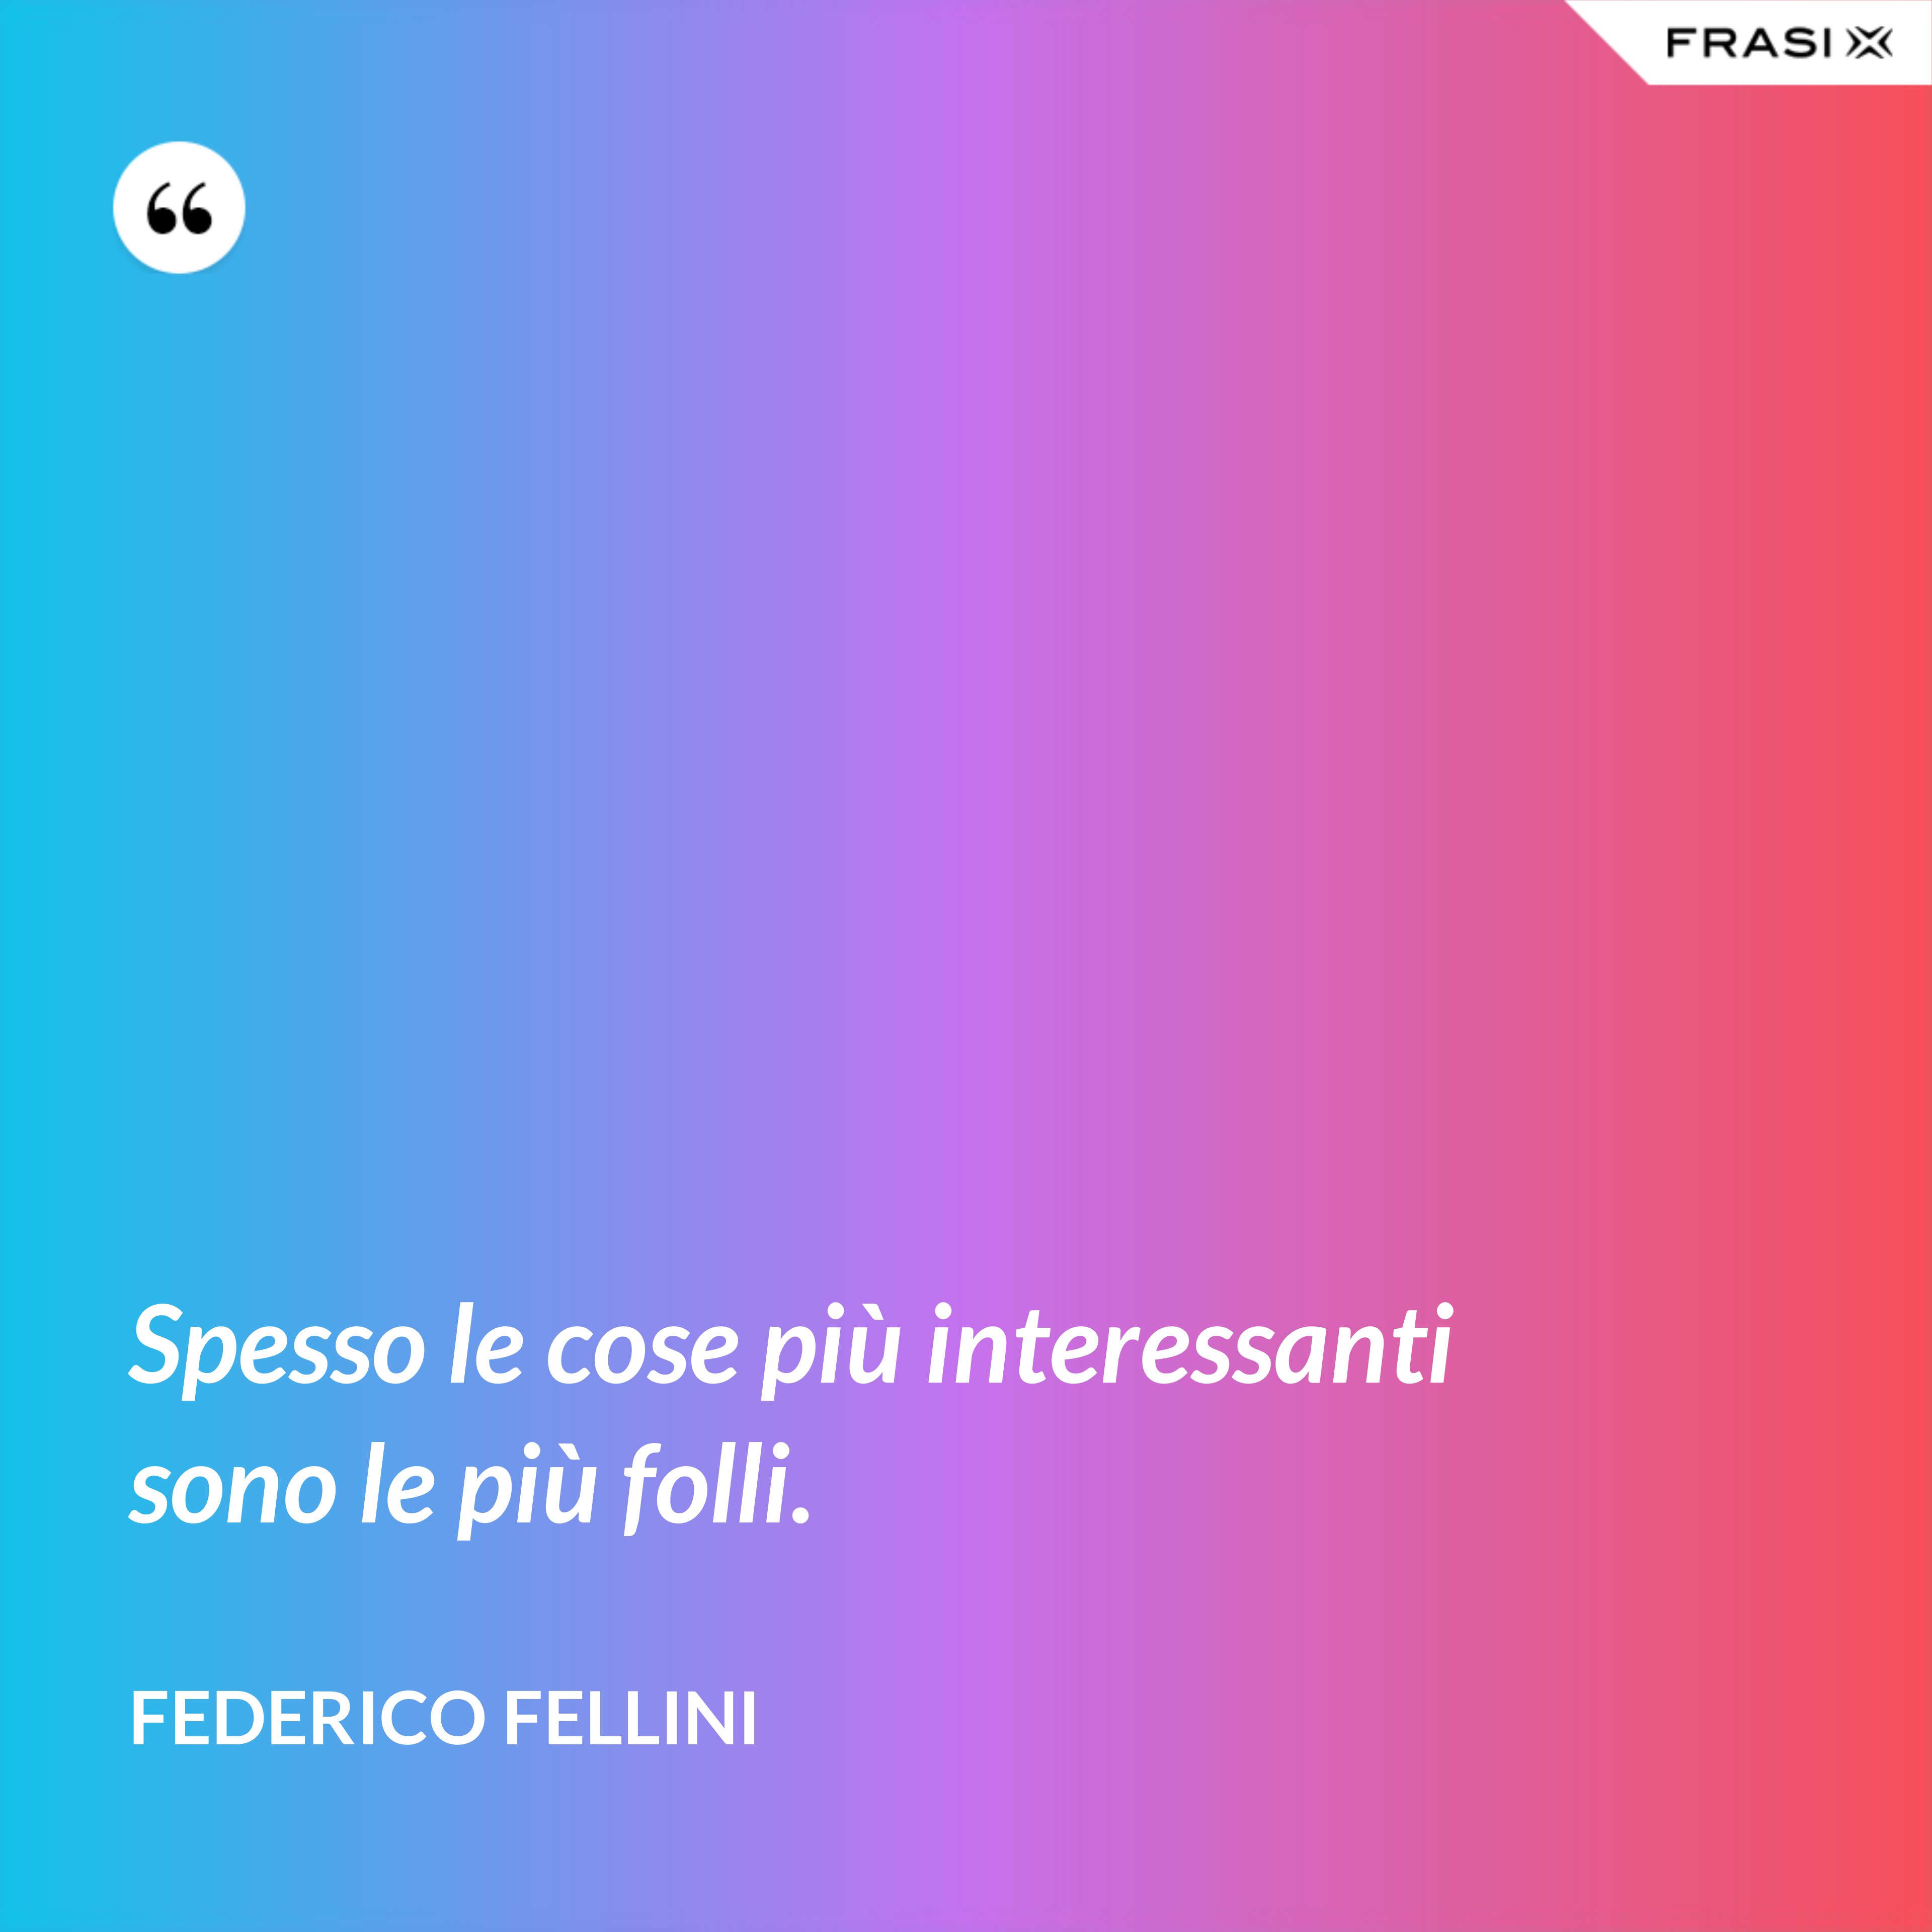 Spesso le cose più interessanti sono le più folli. - Federico Fellini